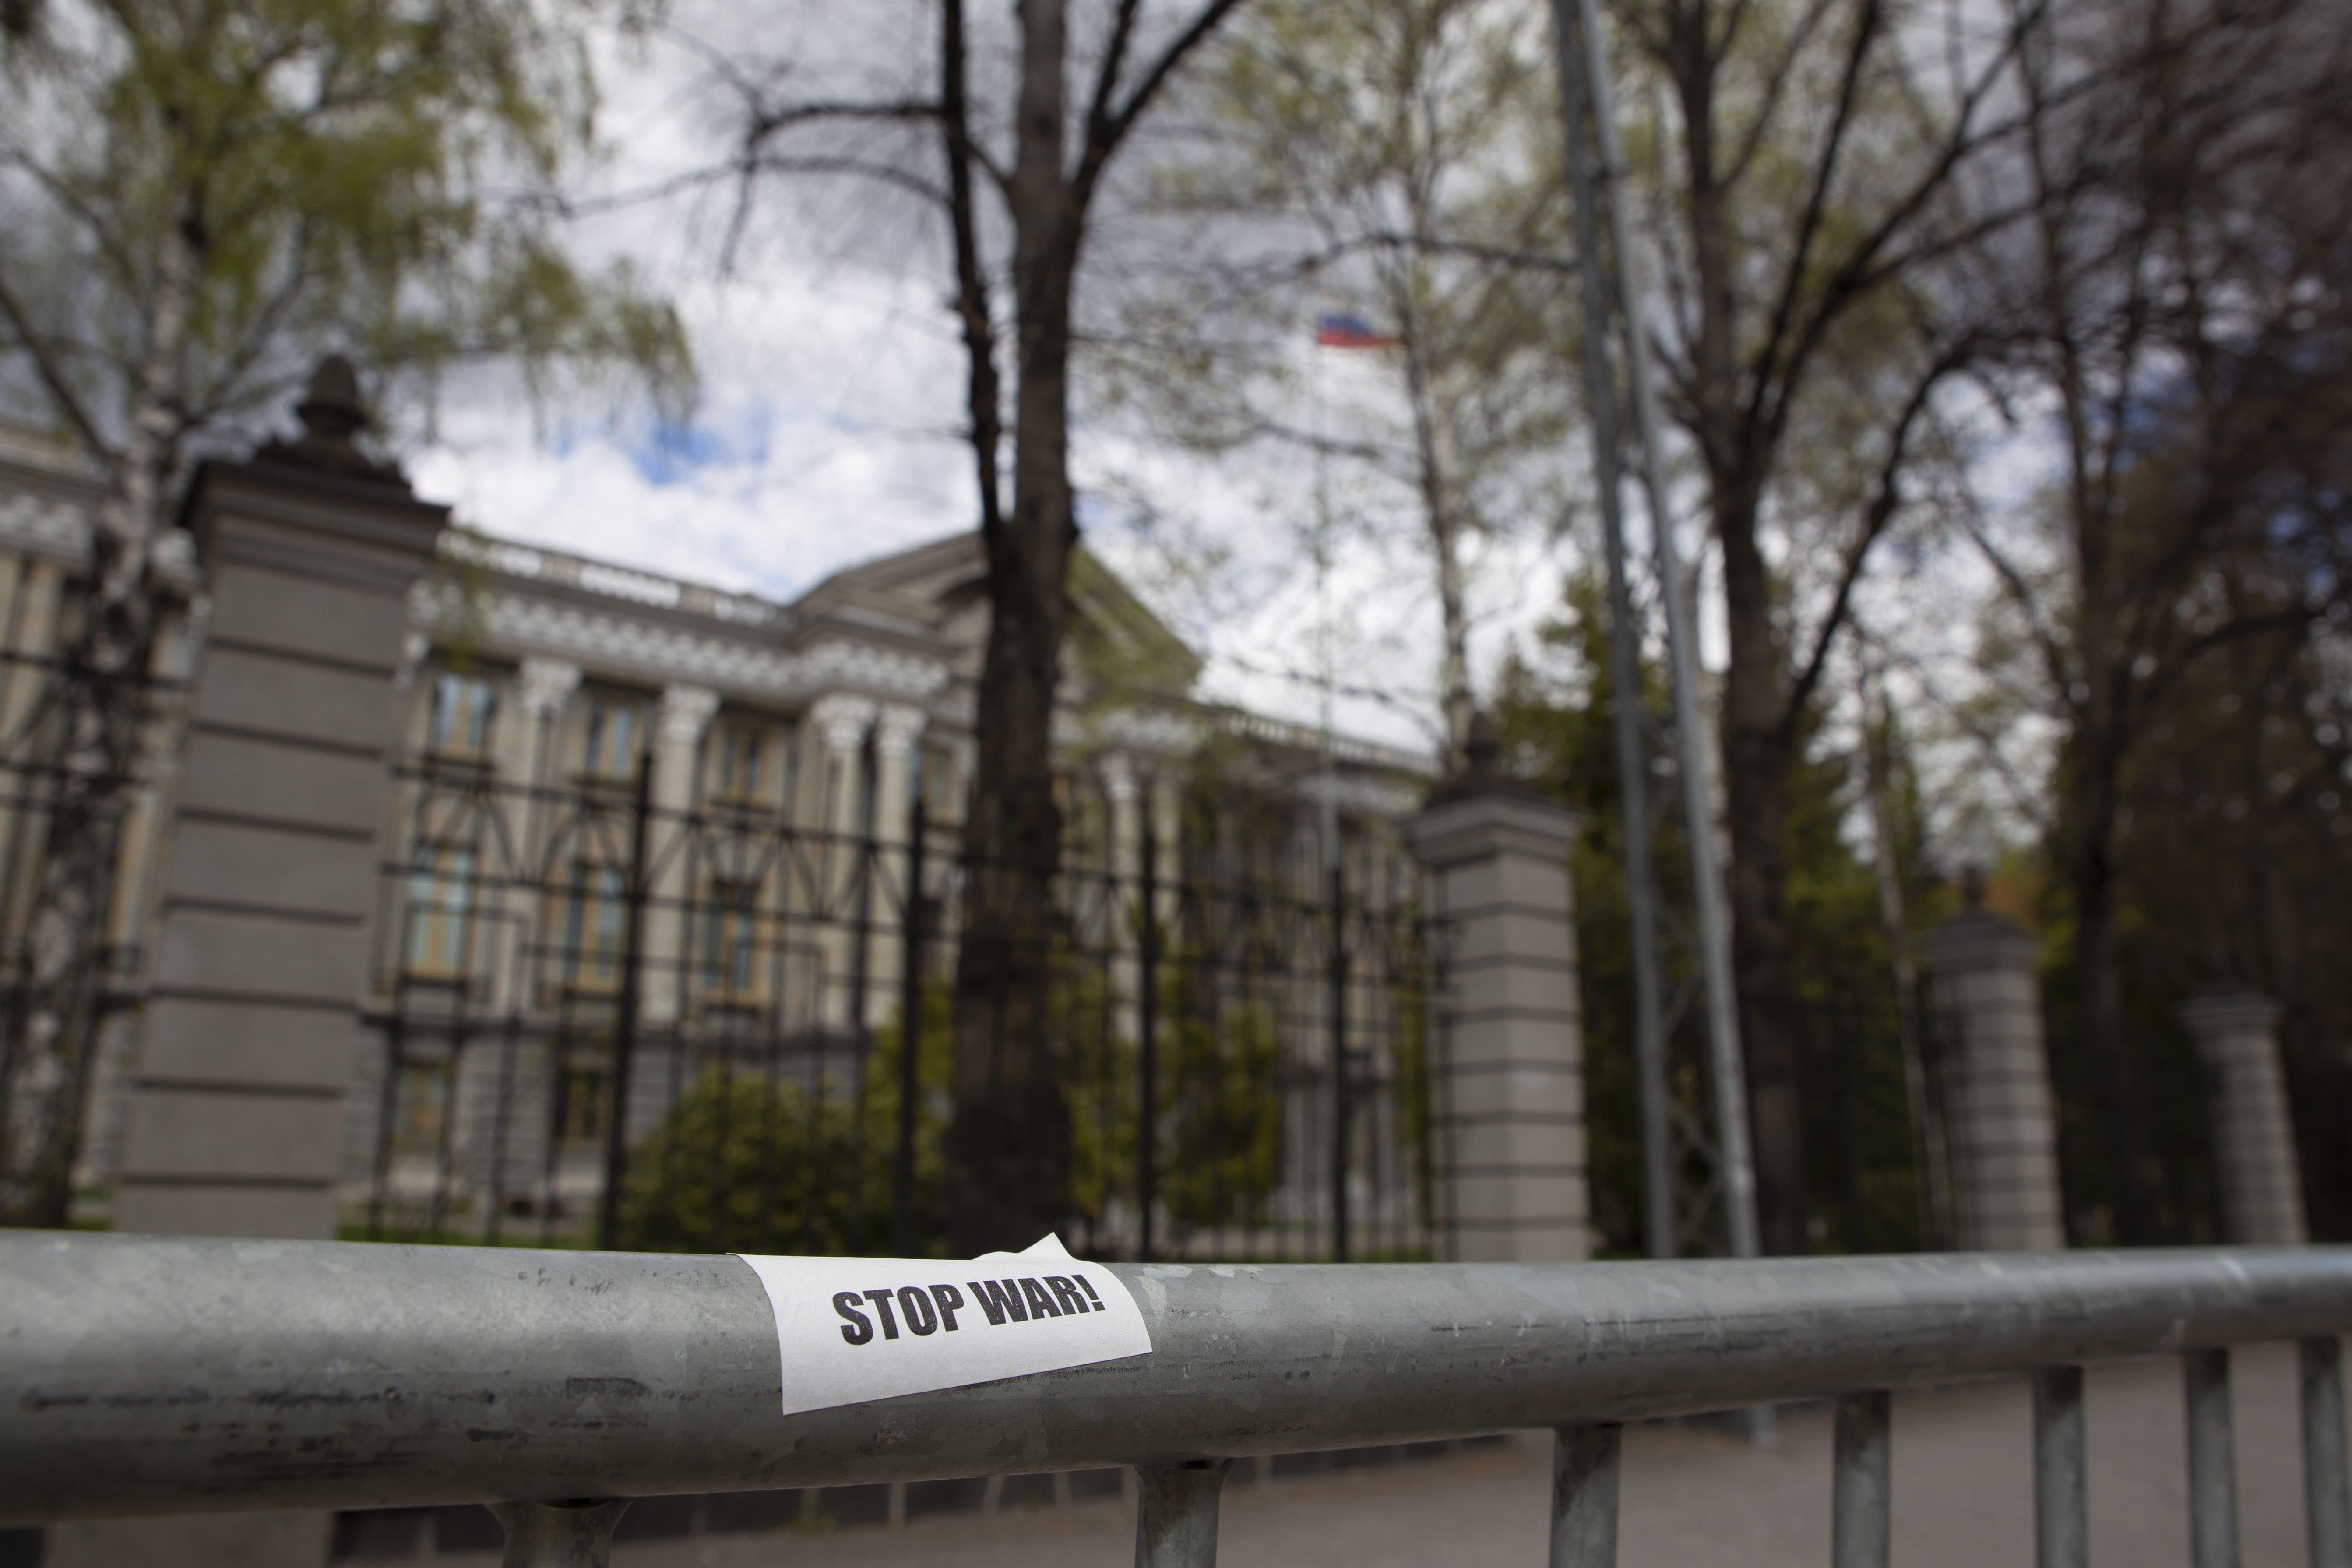 تقول روسيا إن السفارة الفنلندية لا يمكنها استخدام سوى بنك واحد (خاضع للعقوبات)